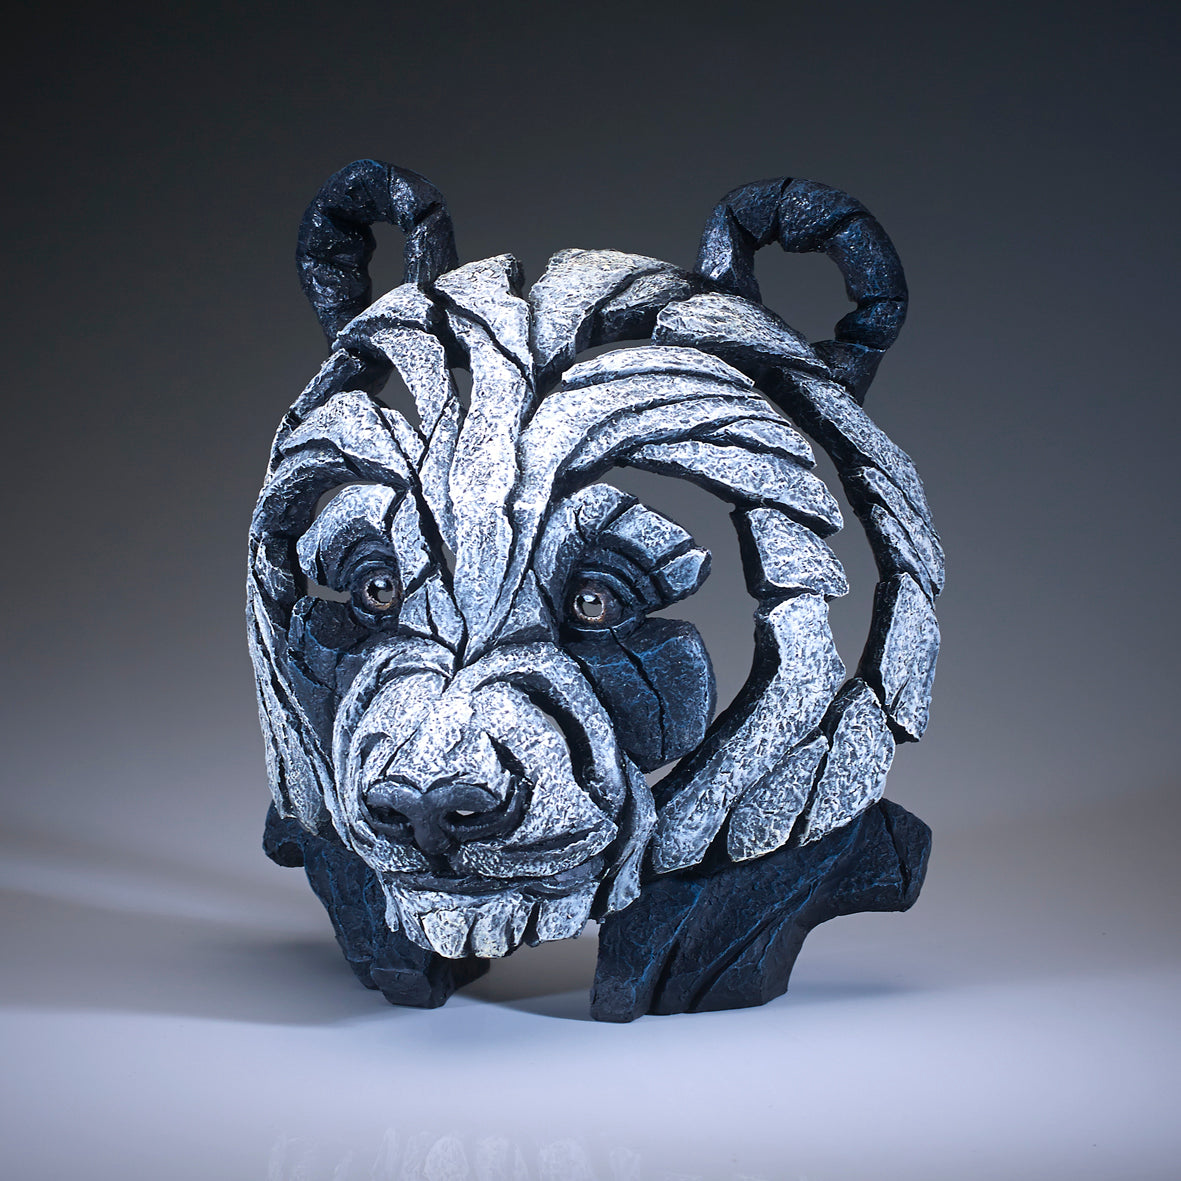 Edge Sculpture Panda Bust by Matt Buckley